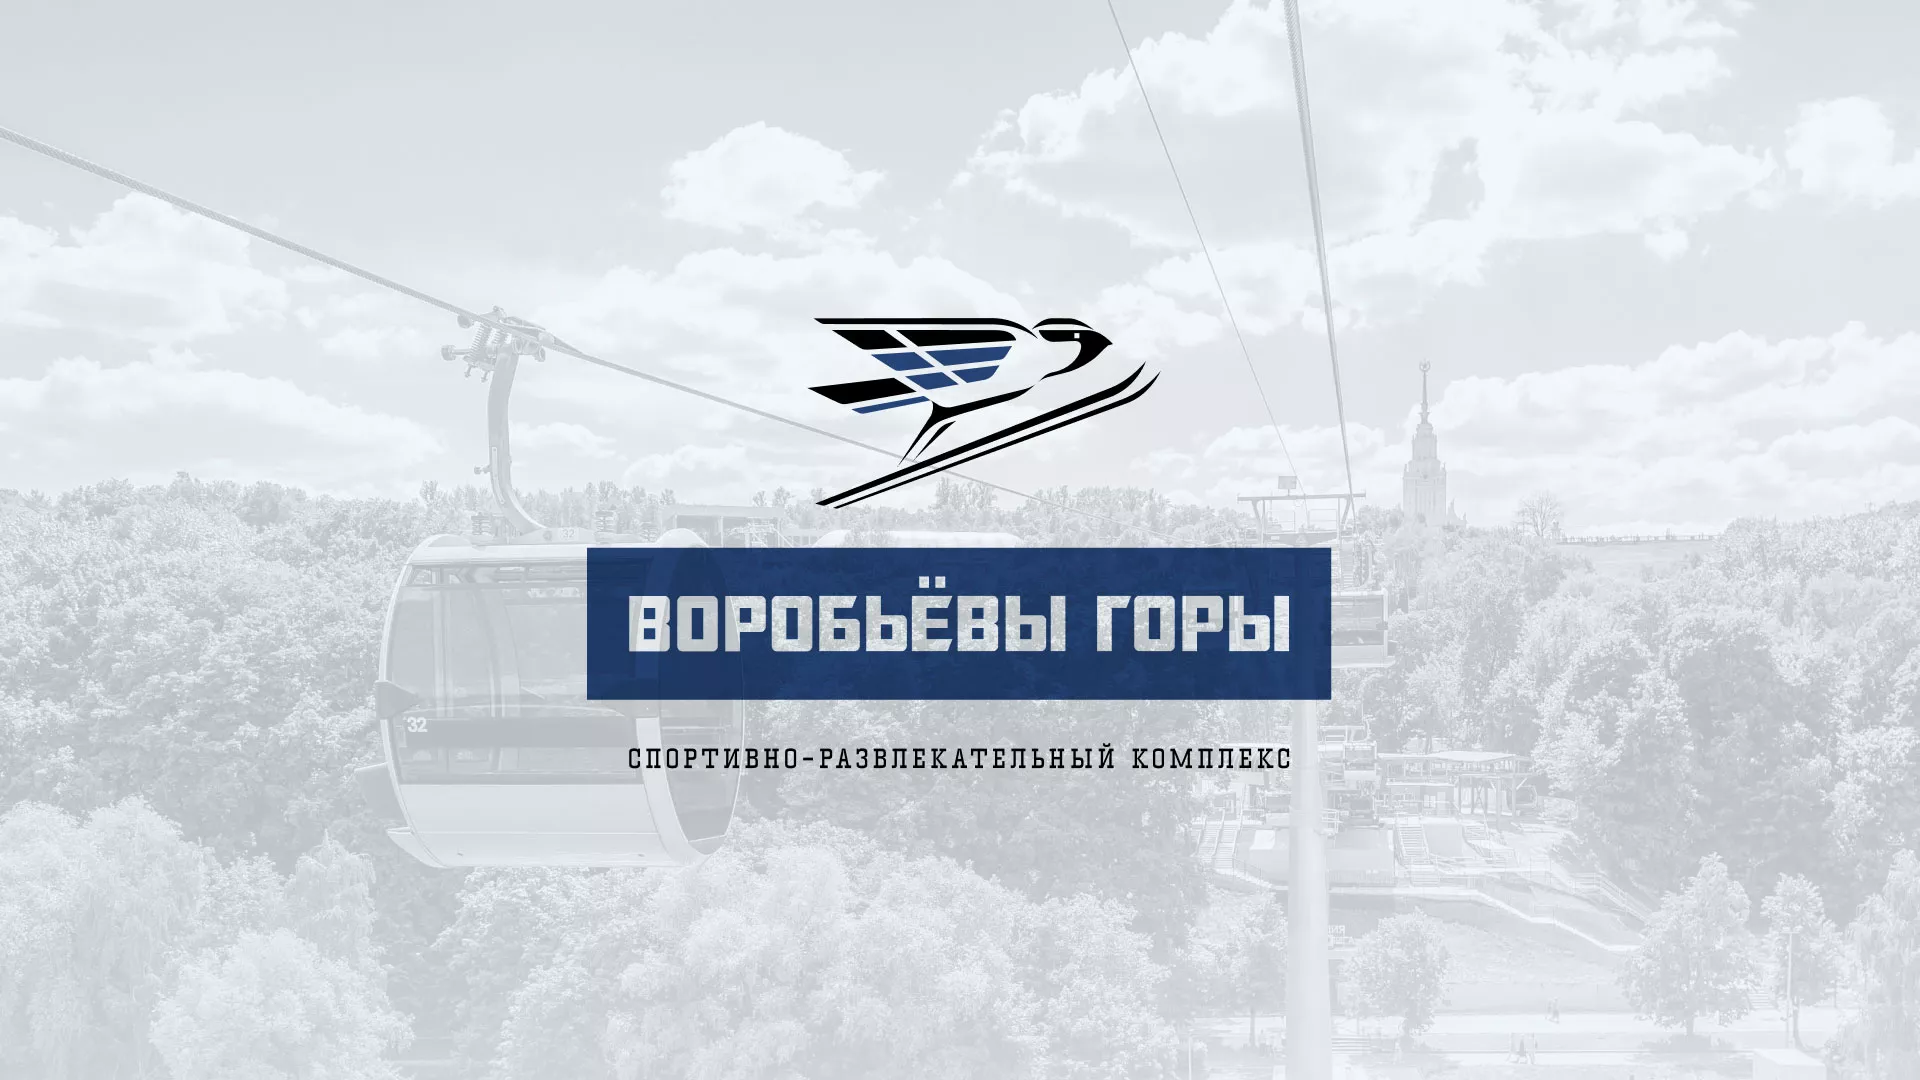 Разработка сайта в Камызяке для спортивно-развлекательного комплекса «Воробьёвы горы»